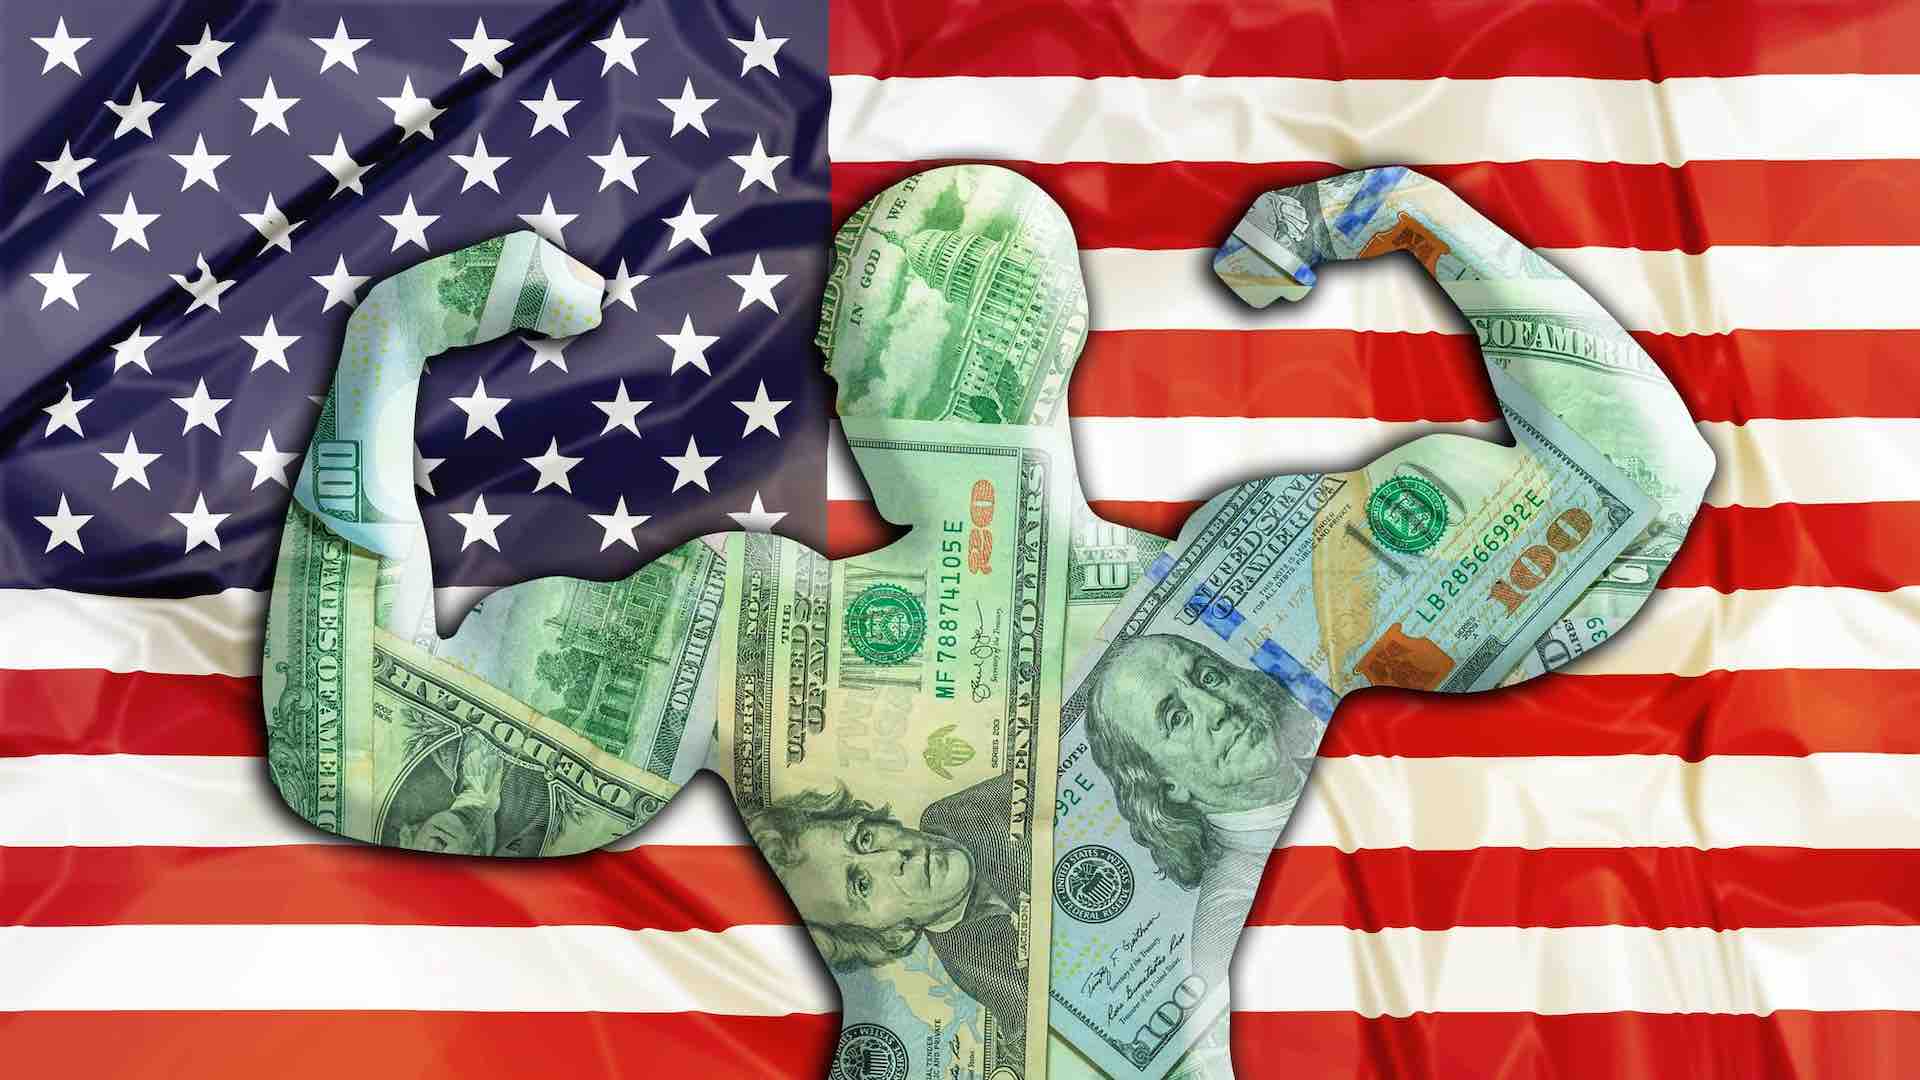 नीतिगत अनिश्चितता के बीच डॉलर के प्रभुत्व से वैश्विक बाजार में उथल-पुथल